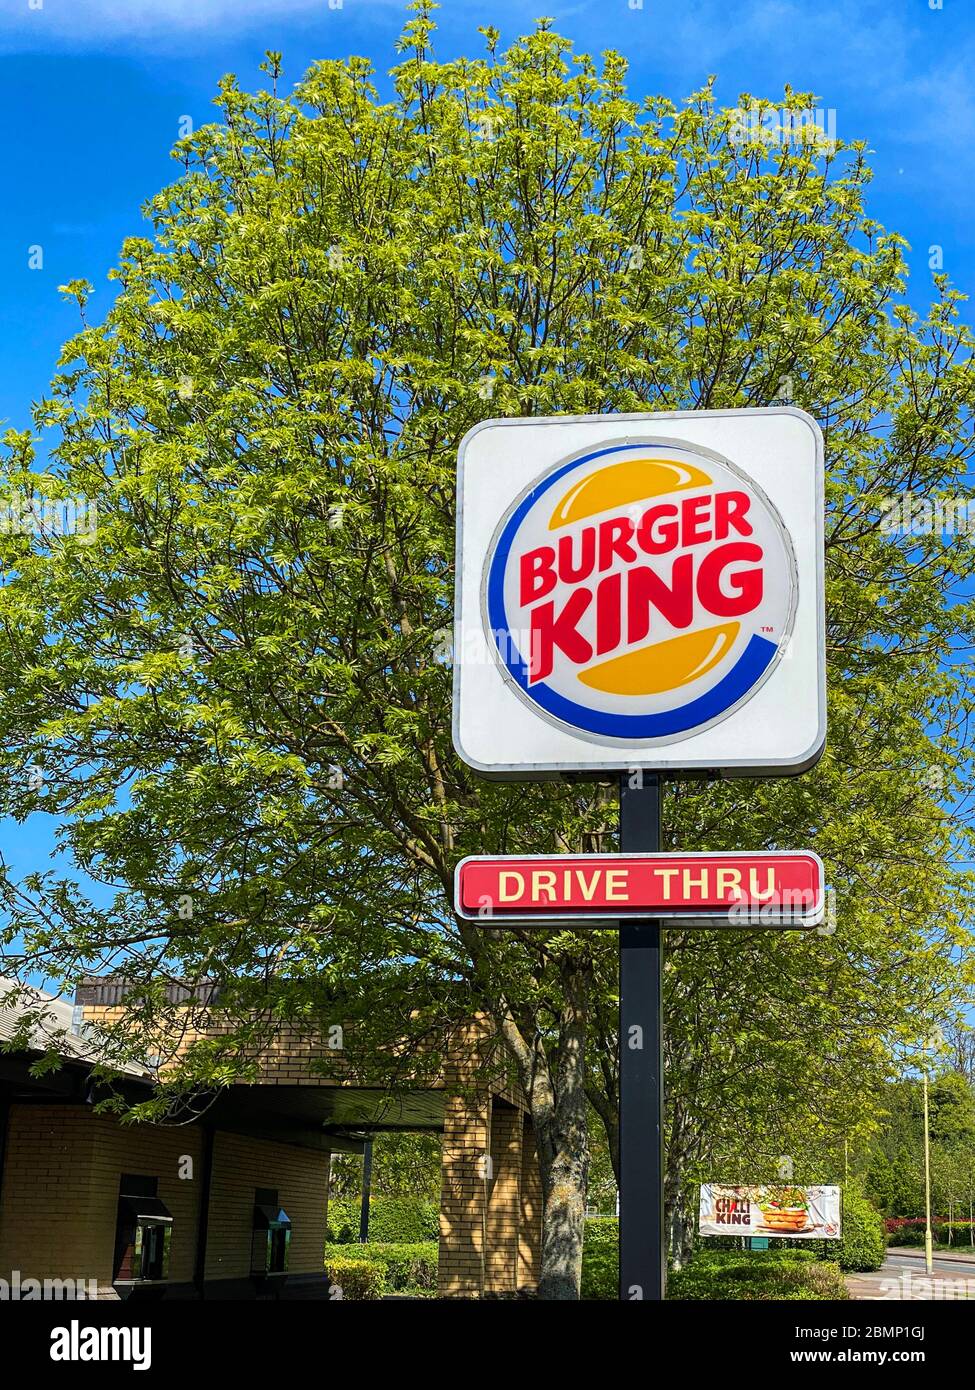 Ashford, Regno unito - 23 aprile 2020: Guida nel segno di un ristorante fast food Burger King. Burger King è una catena mondiale di fast food Foto Stock